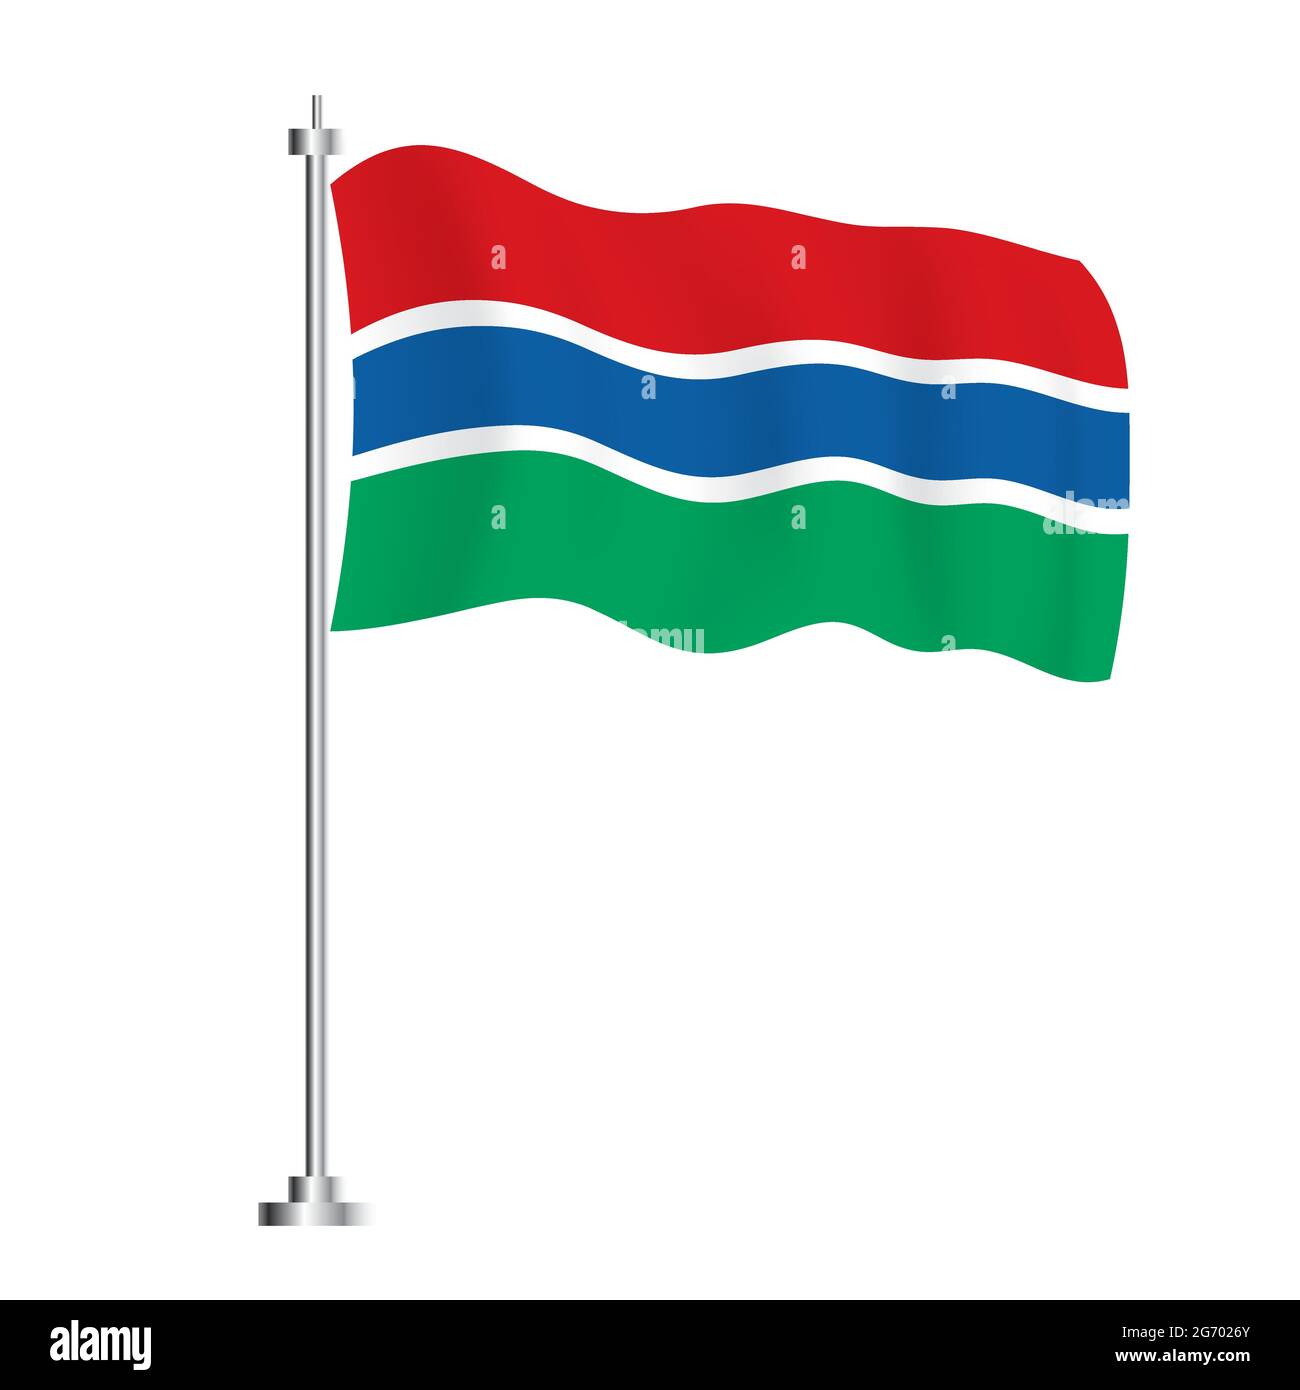 La bandiera Gambia. Bandiera ad onda isolata del Paese Gambia. Illustrazione vettoriale. Giorno dell'indipendenza. Illustrazione Vettoriale